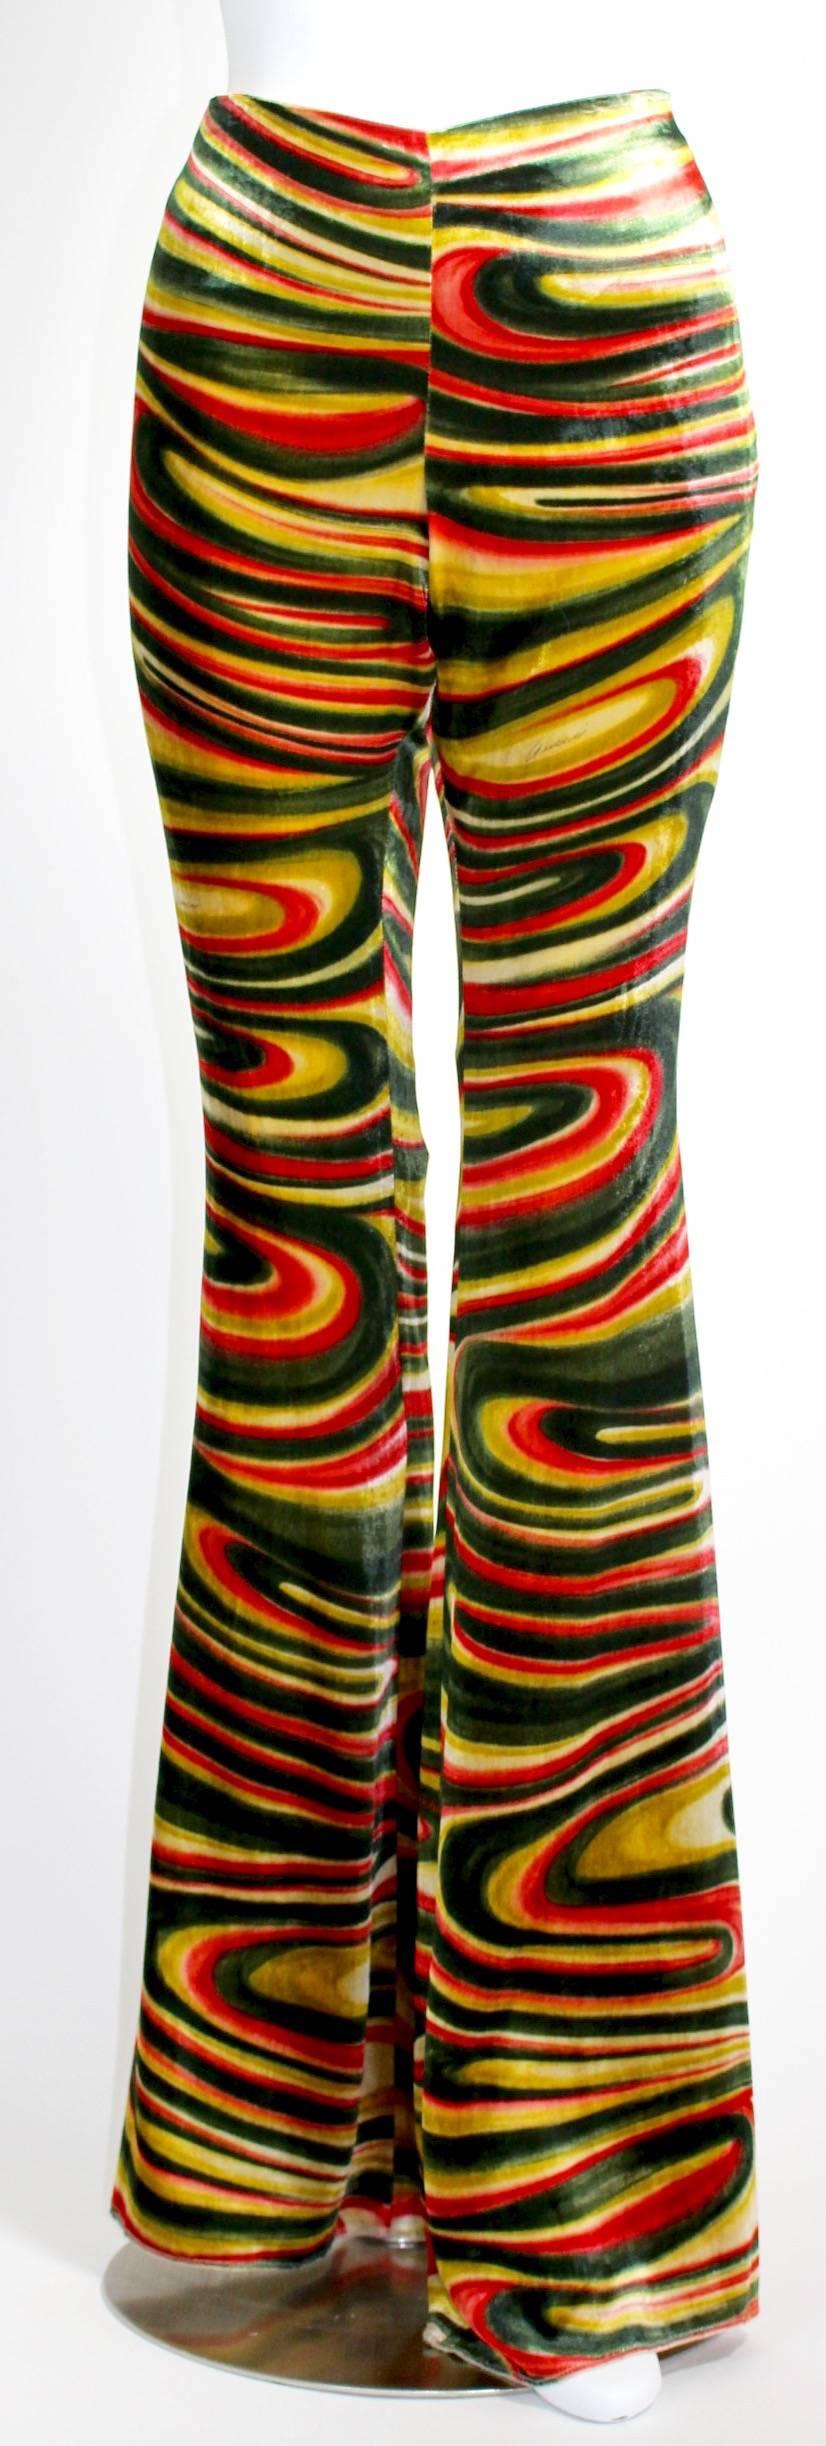 Gucci ist bekannt für seine Prints:: und der psychedelische Wirbel auf dieser Hose gehört zu den kultigsten. Das Muster aus wellenförmigen Wellen in Smaragd:: Granat und Gold wurde von Tom Ford während seiner Glanzzeit als Kreativdirektor des